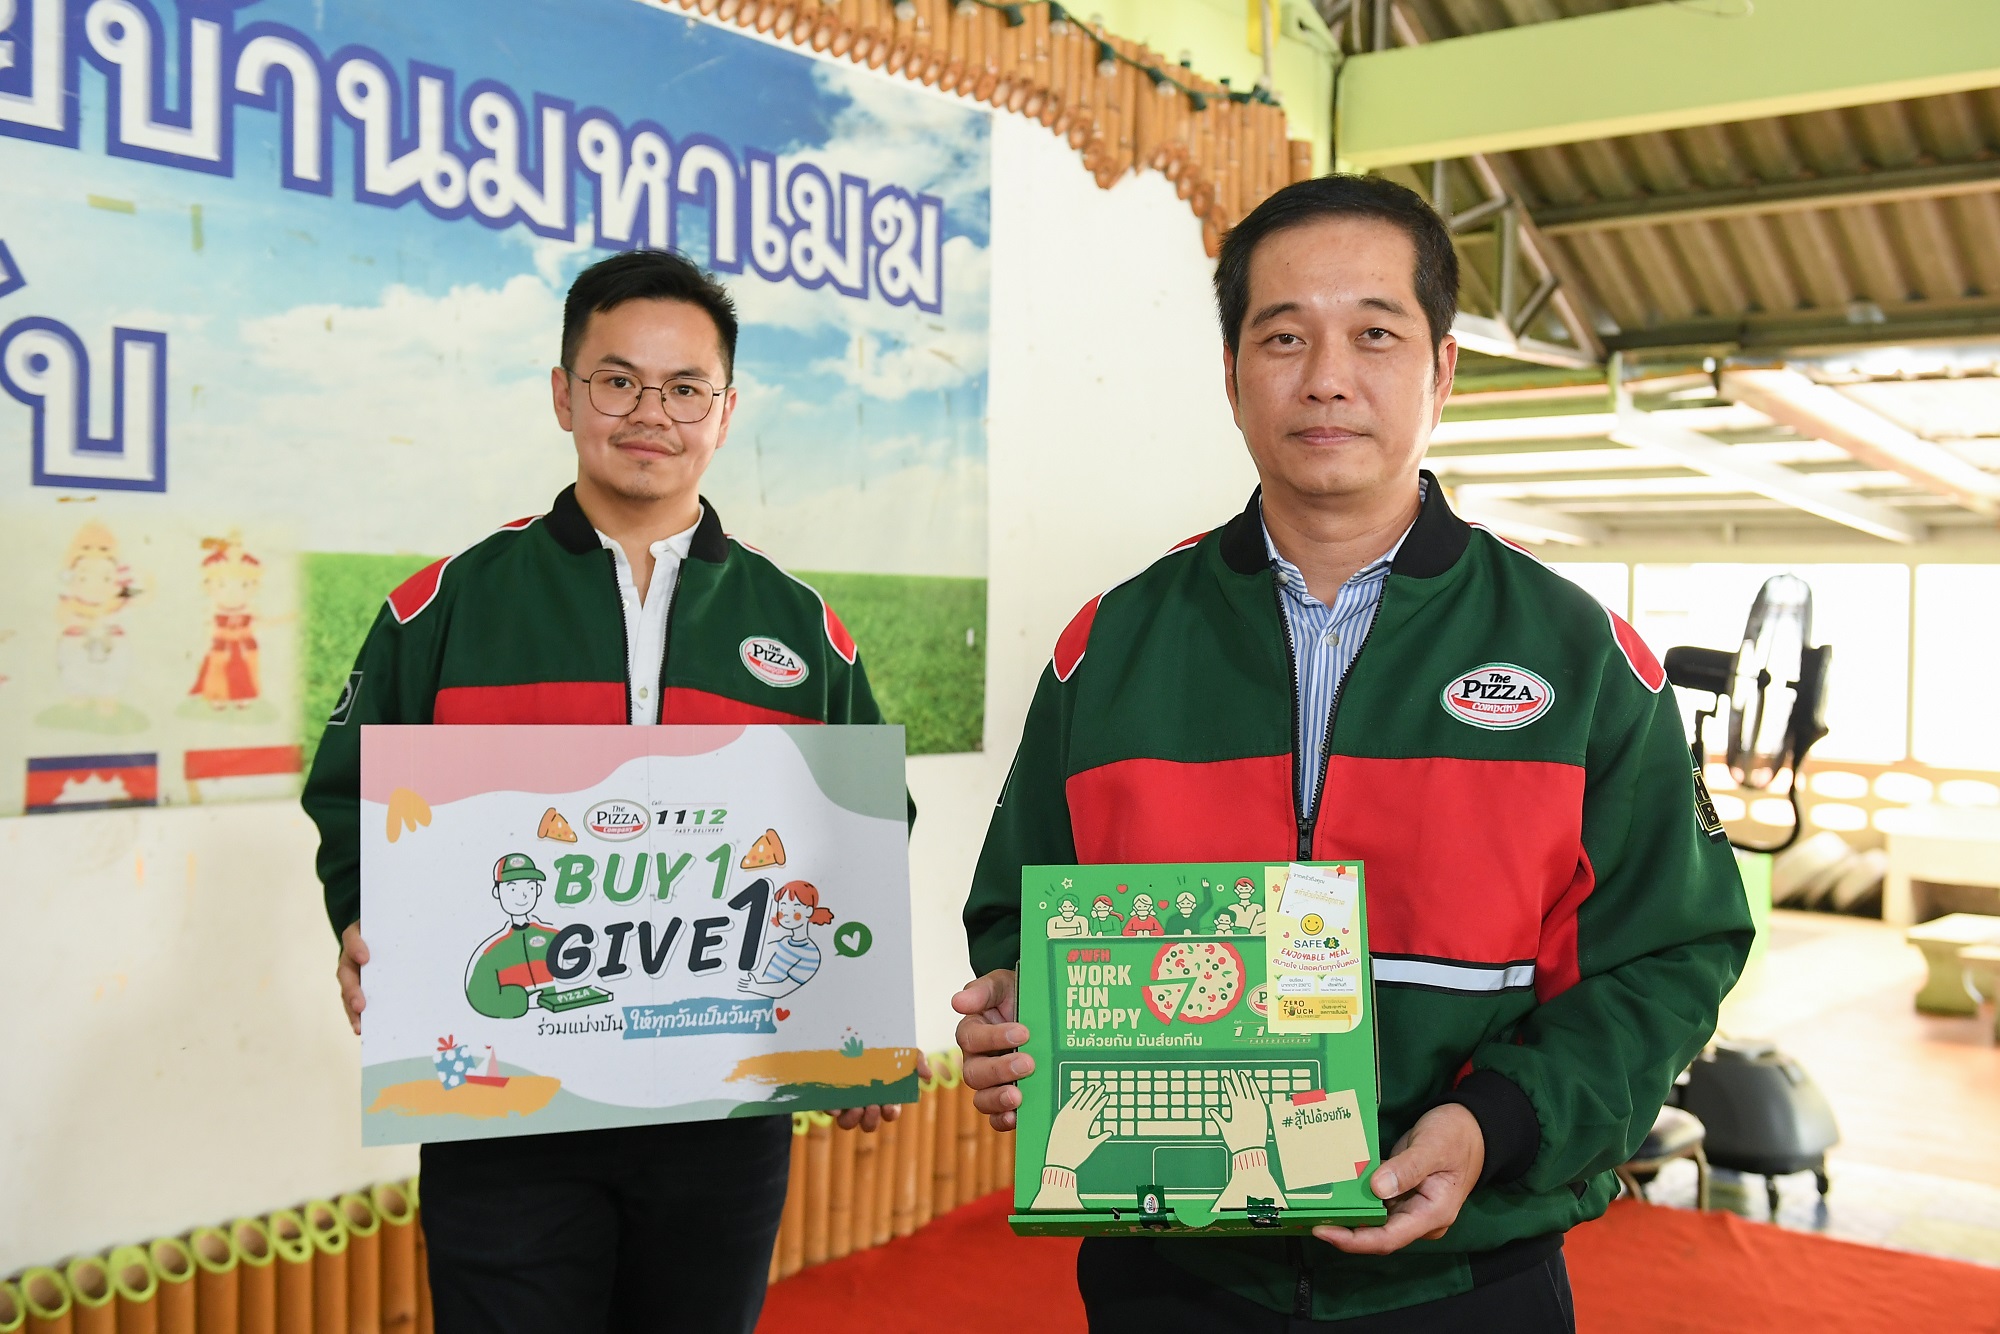 ภาพข่าว: เดอะ พิซซ่า คอมปะนี ส่งต่อพิซซ่าในโครงการ Buy 1 Give 1 คุณอิ่มท้อง น้องอิ่มด้วย สู่โรงเรียน - มูลนิธิทั่วไทย